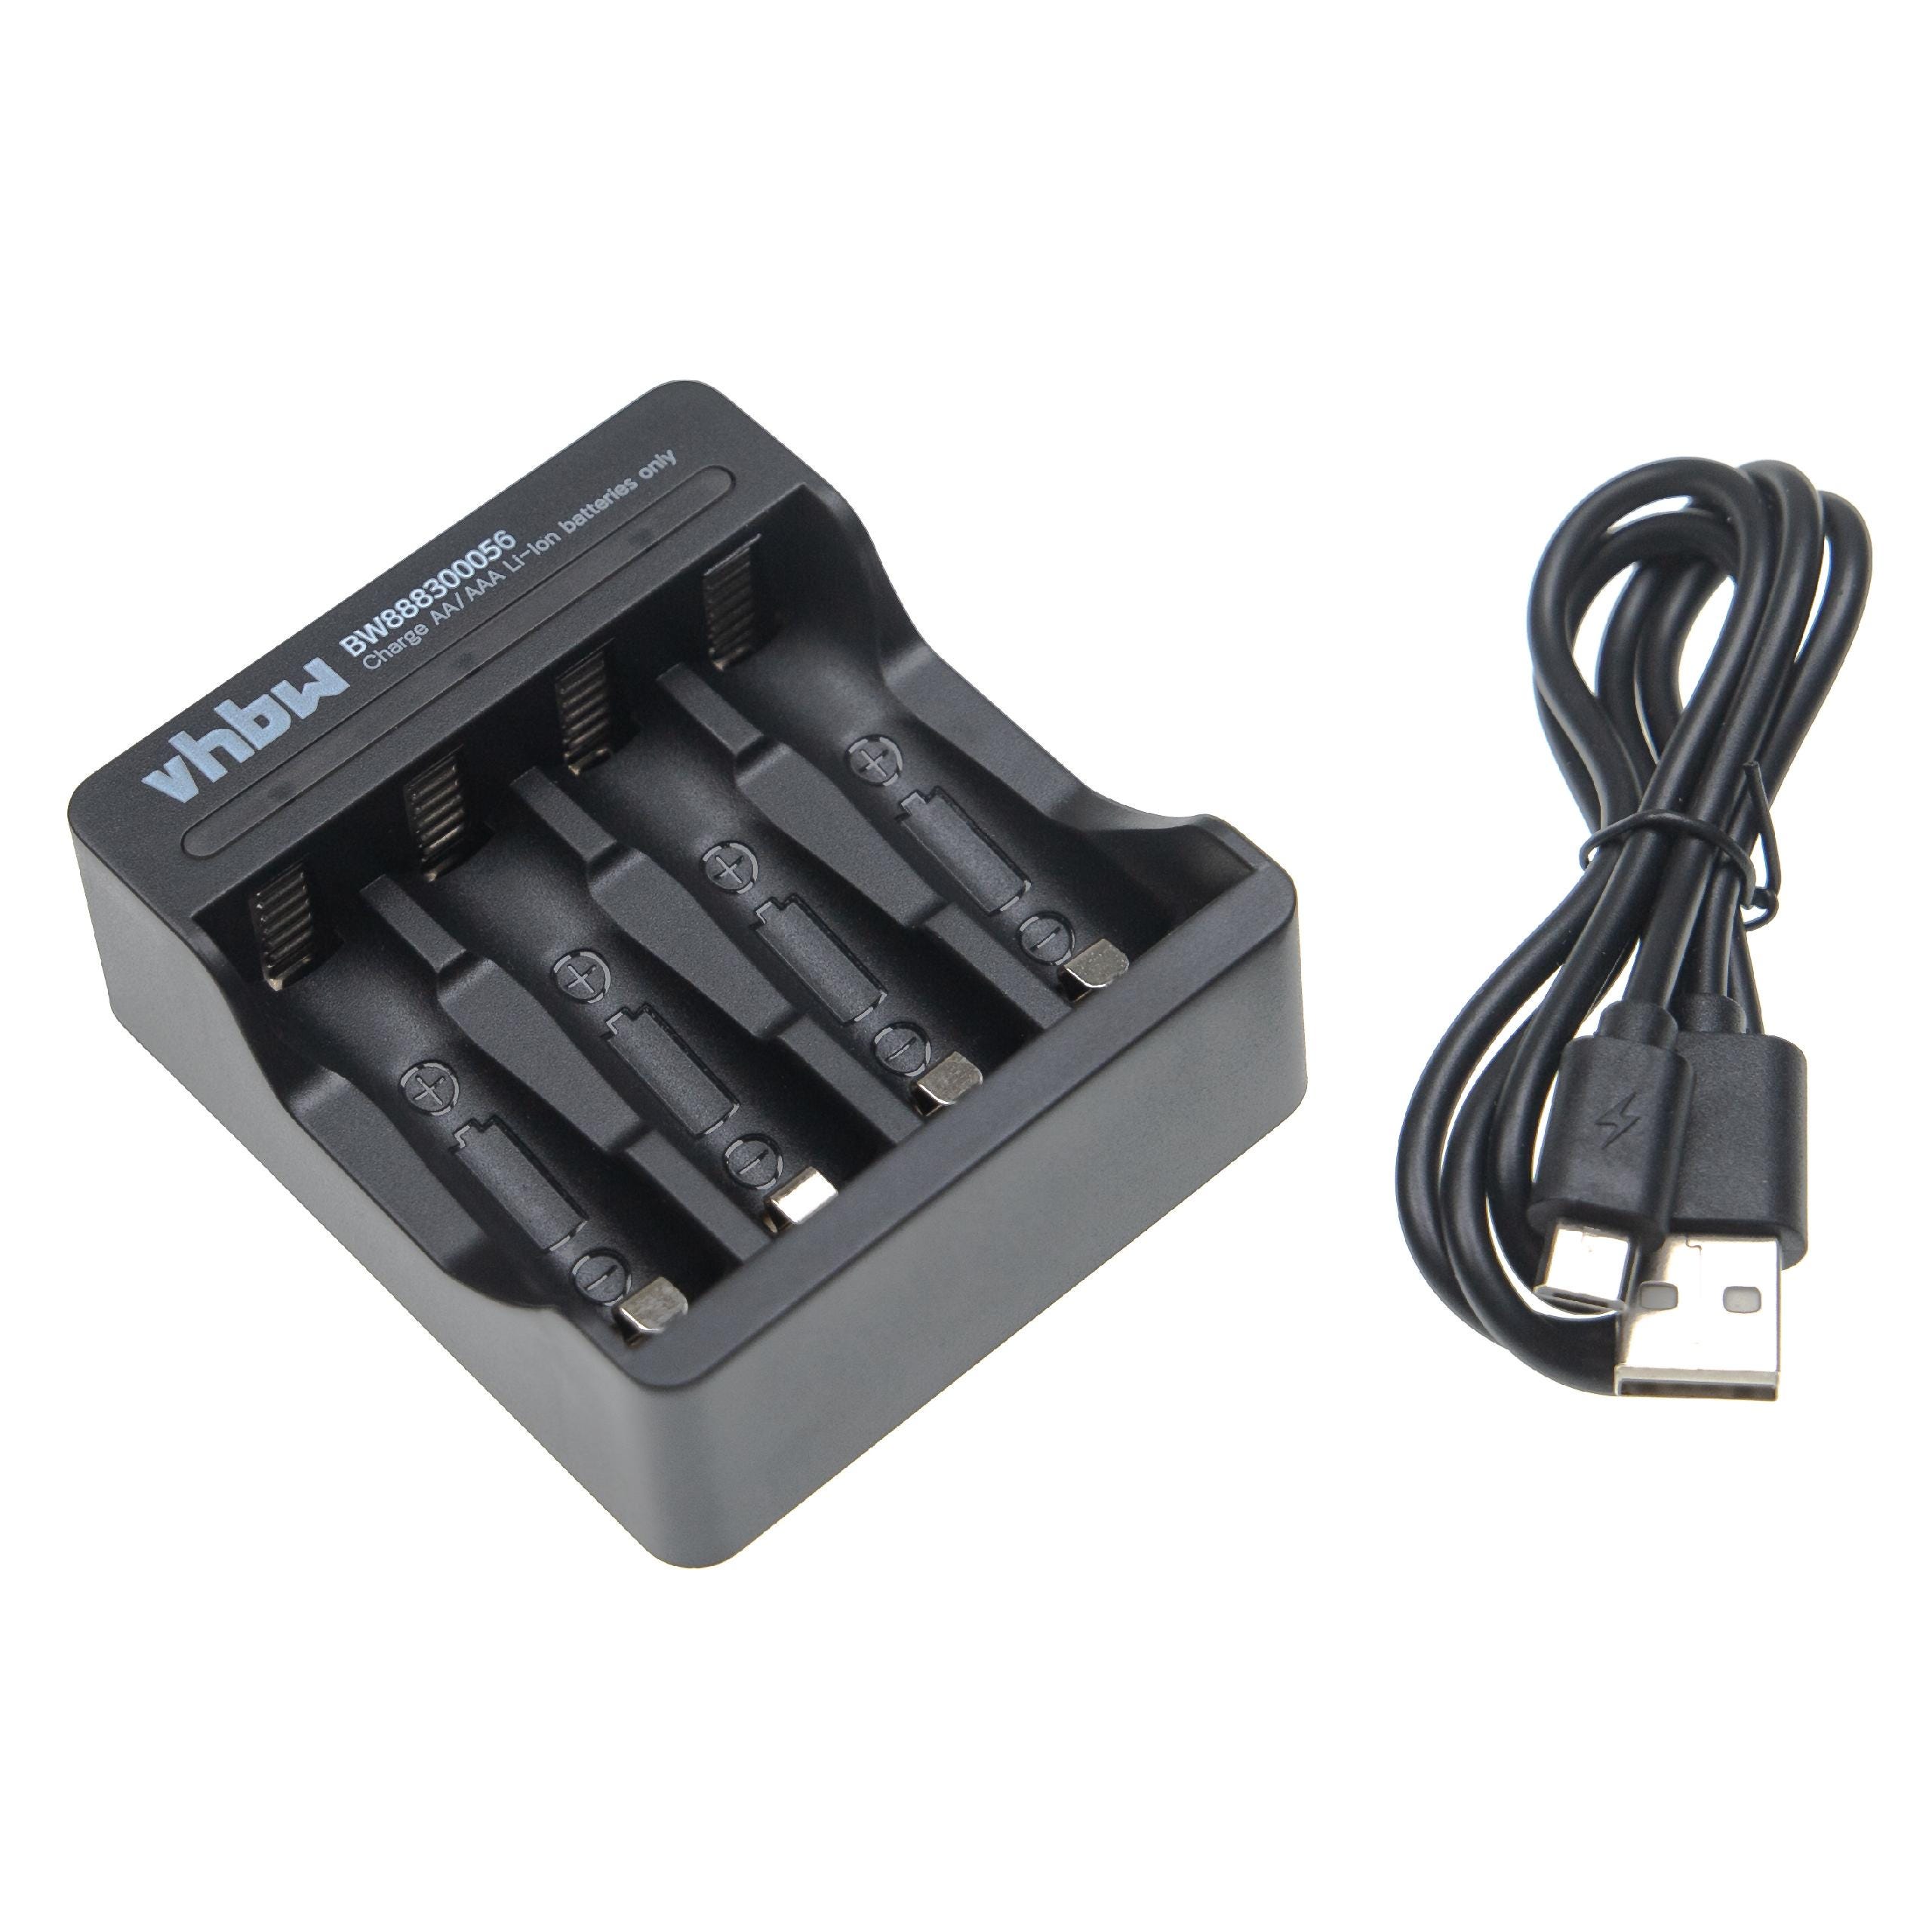 Vhbw Chargeur de piles 4 bornes compatible avec piles AA/ AAA rechargeables,  batteries, piles domestiques Li-ion - Chargeur Micro USB